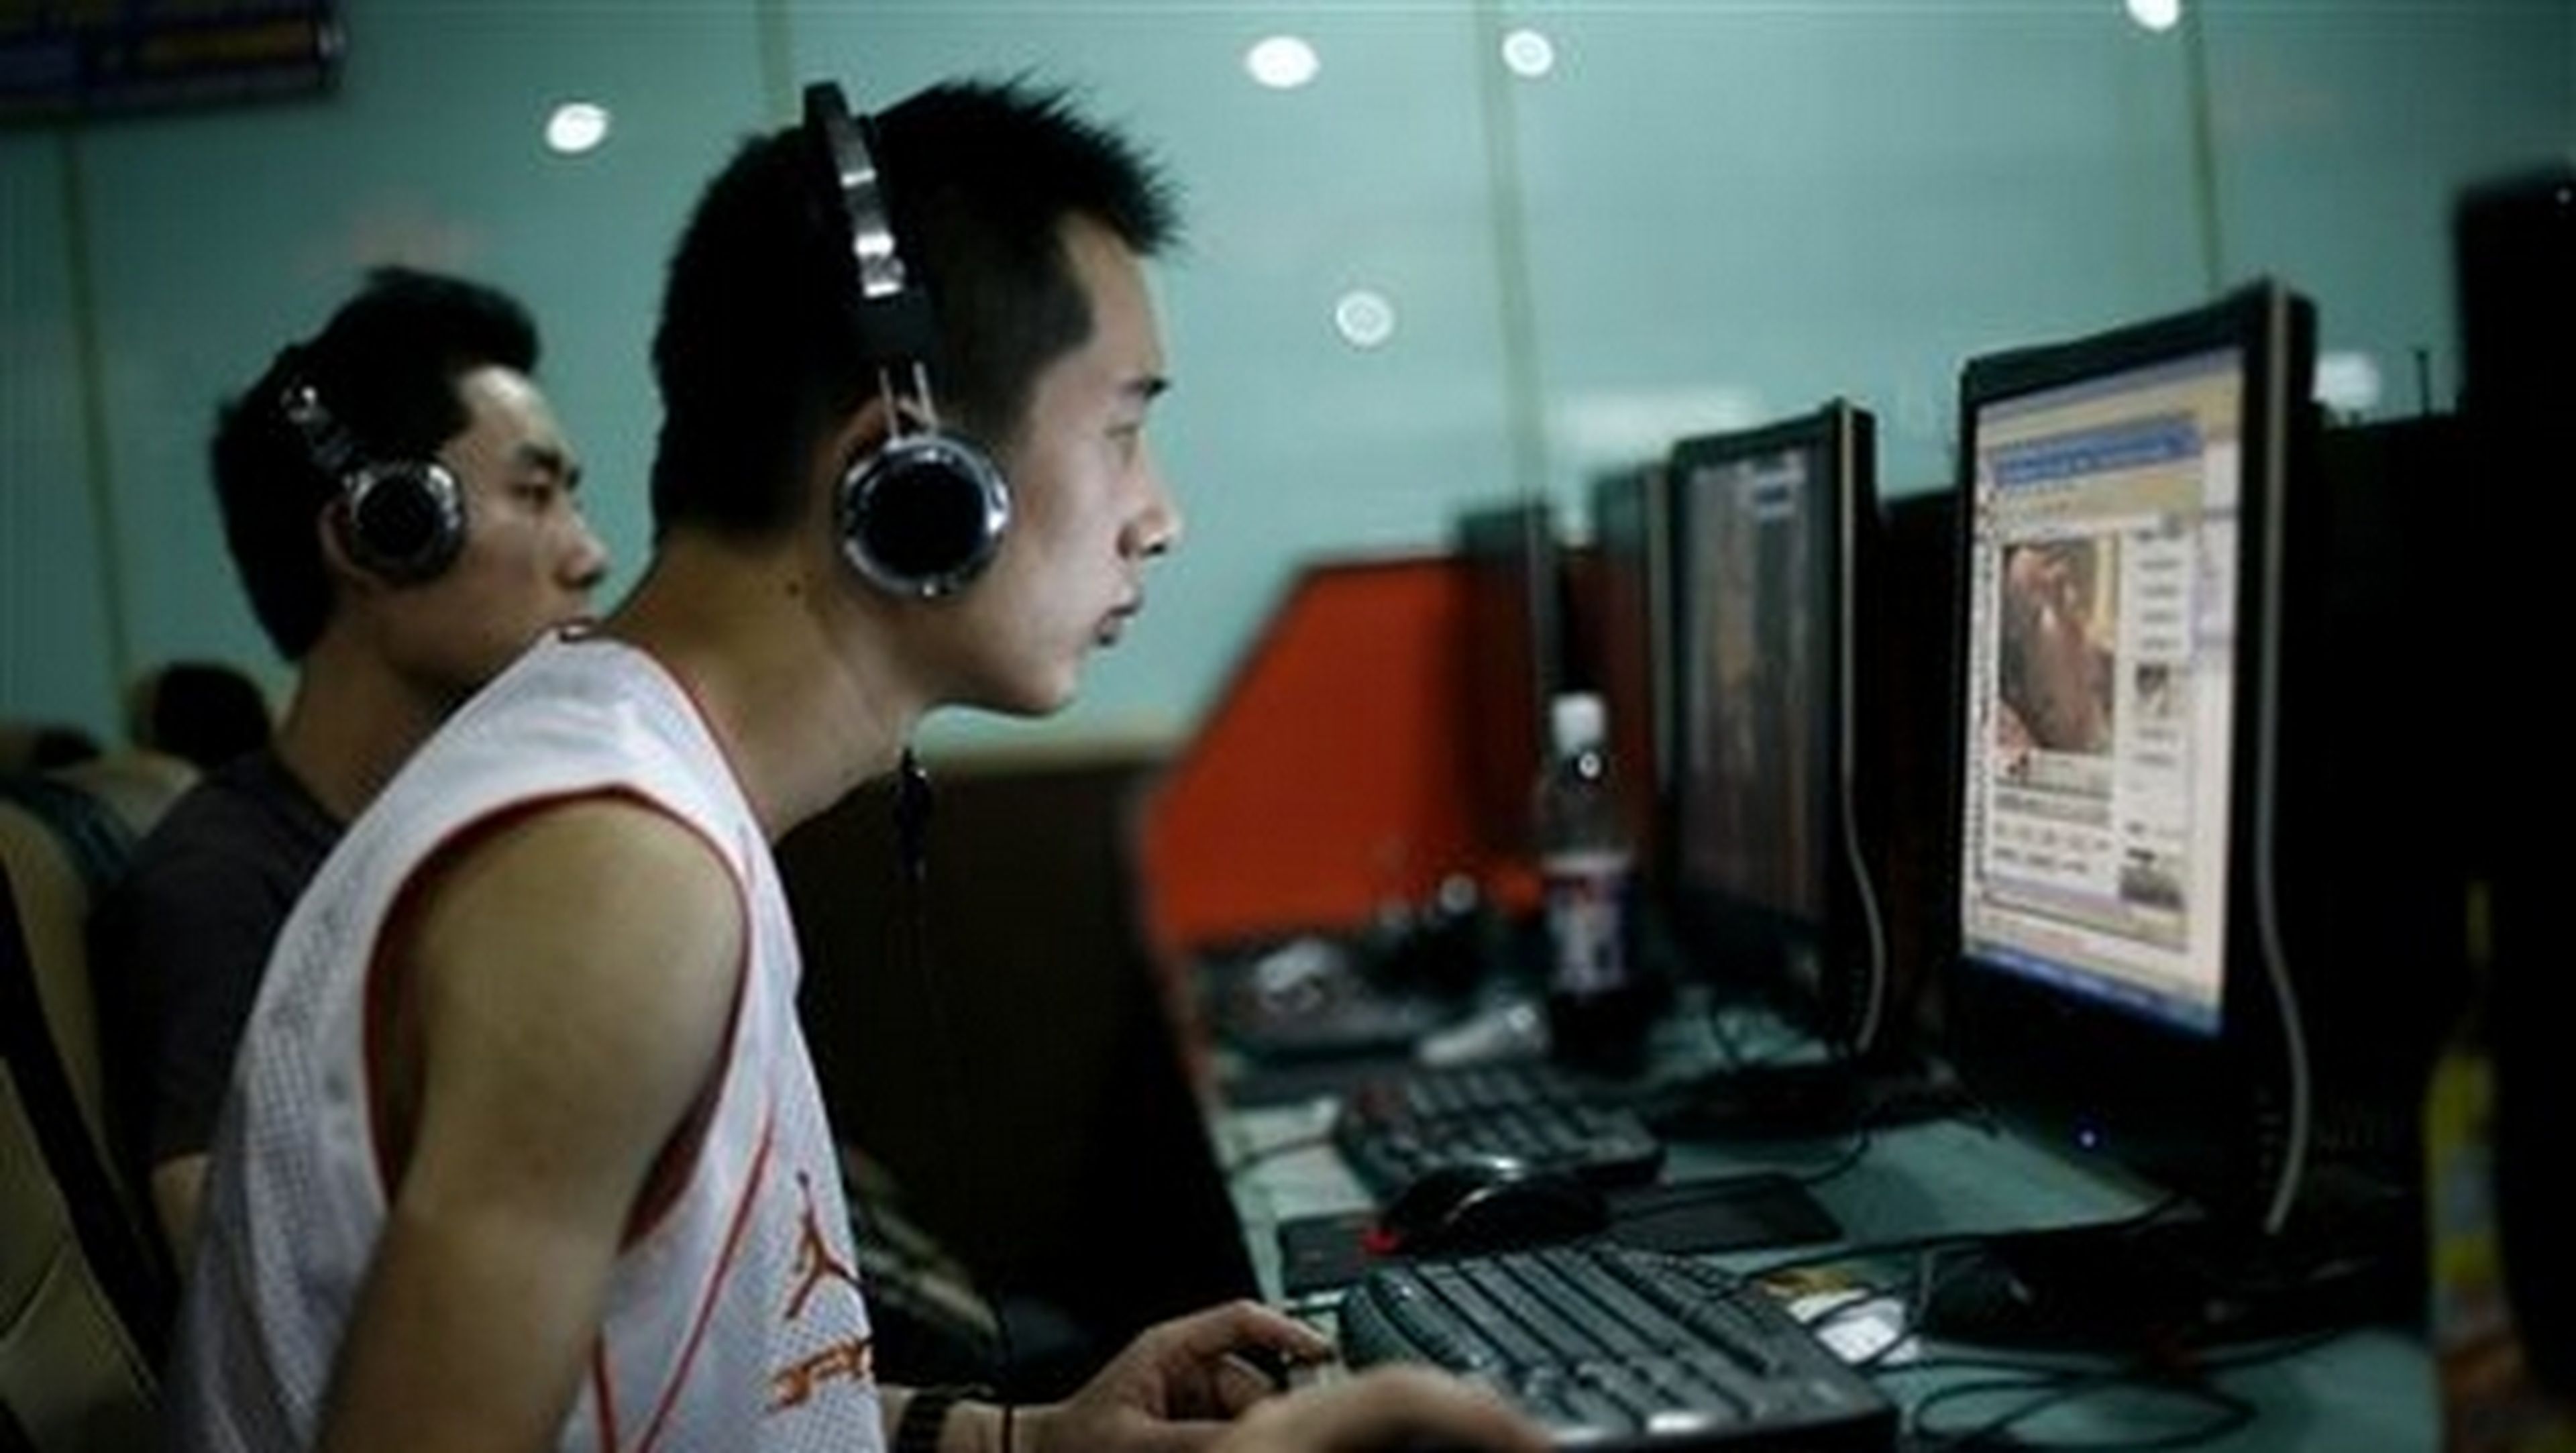 Joven chino se corta la mano para curar adicción a Internet.